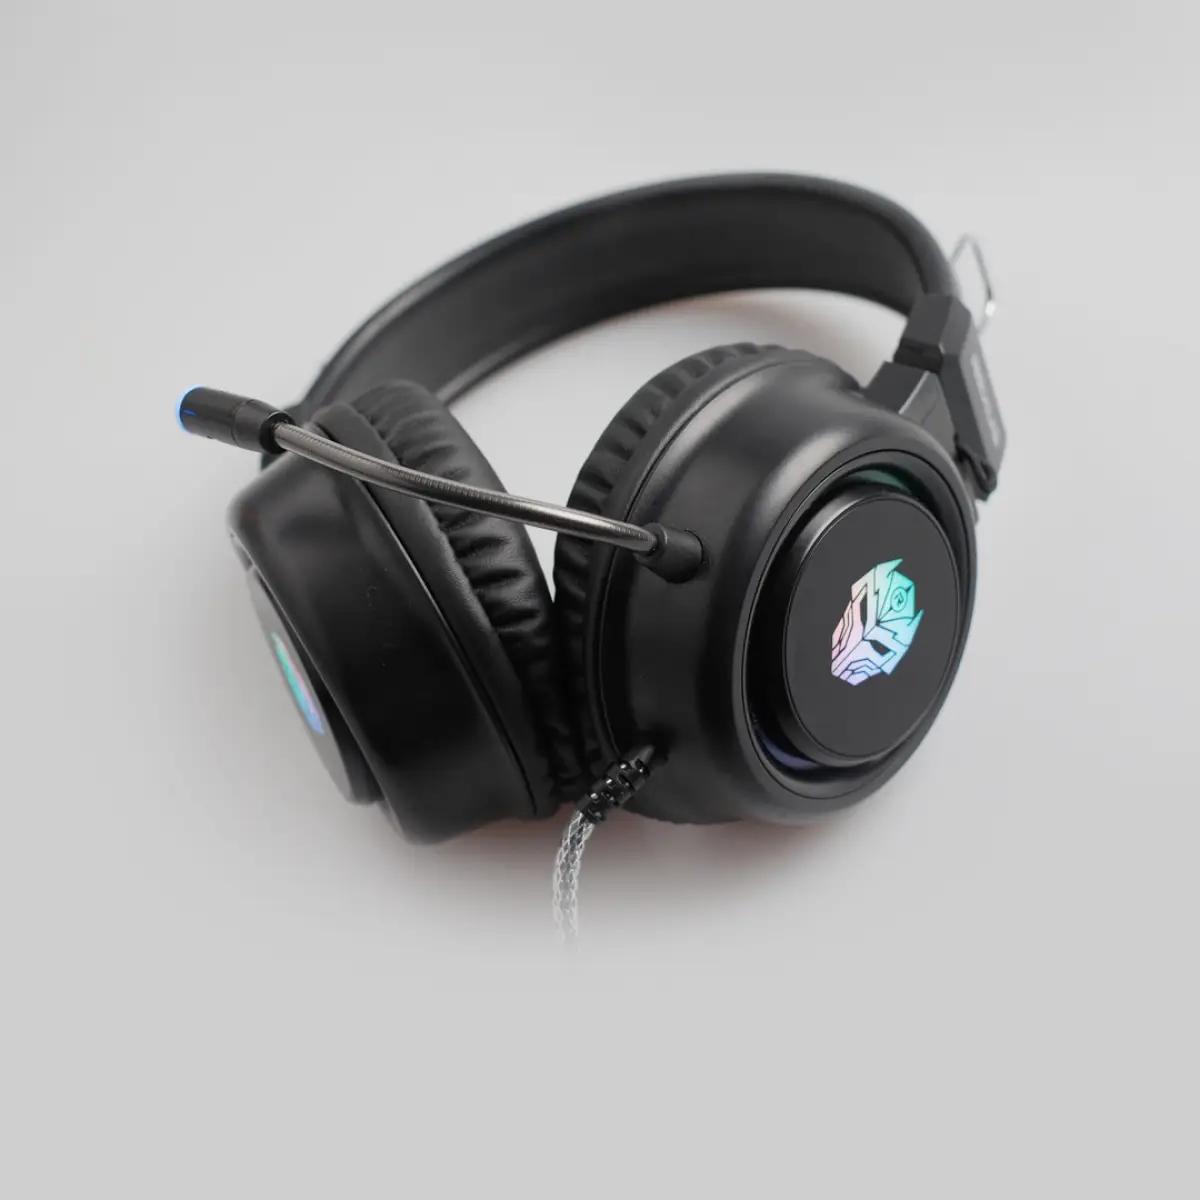 Indogamers.com punya rekomendasi headphone gaming dengan harga paling low, dari kisaran Rp100 ribuan sampai Rp200 ribuan, dengan spesifikasi dan performa yang sudah sangat layak. Rexus F30 Vonix salah satunya. (FOTO: Rexus.id)